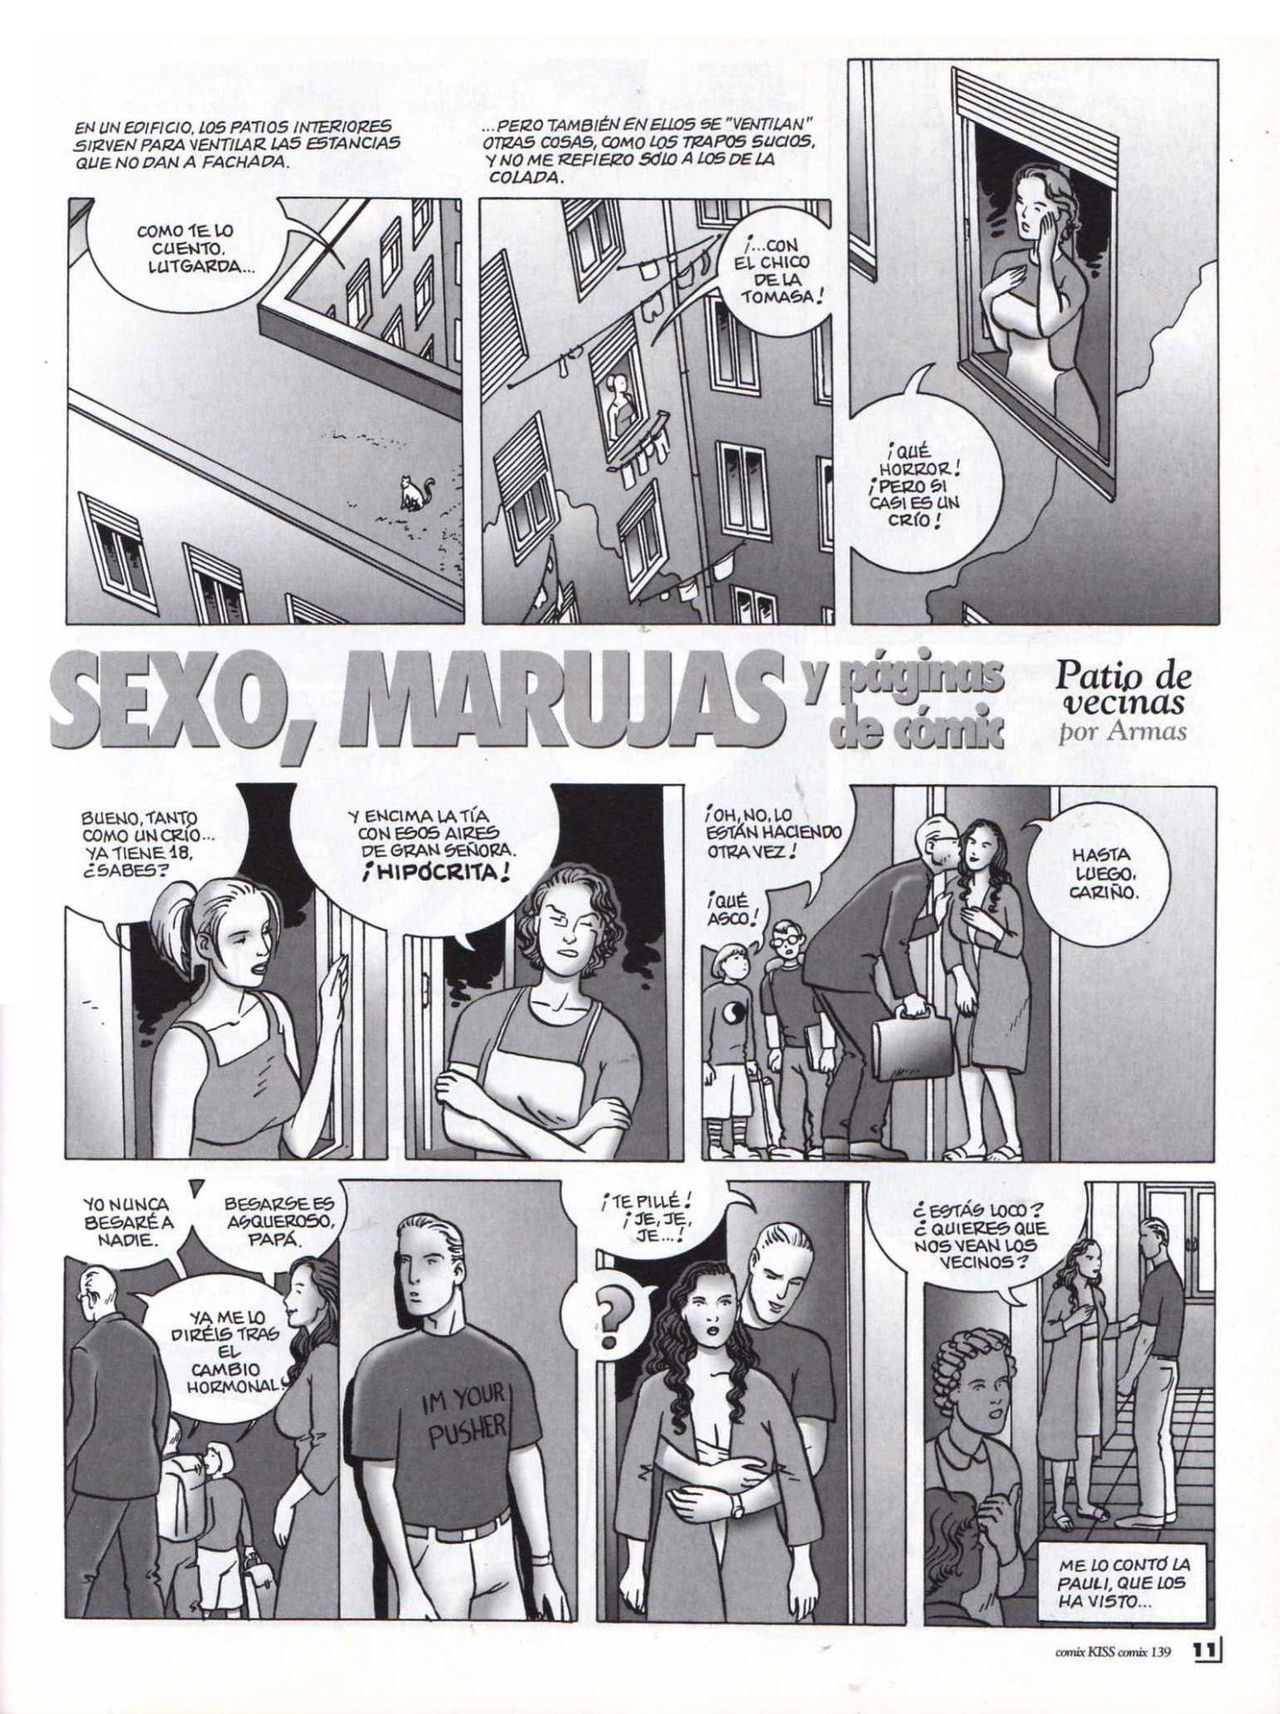 [Ramon Armas] Sexo, marujas y páginas de cómic (Spanish) 4